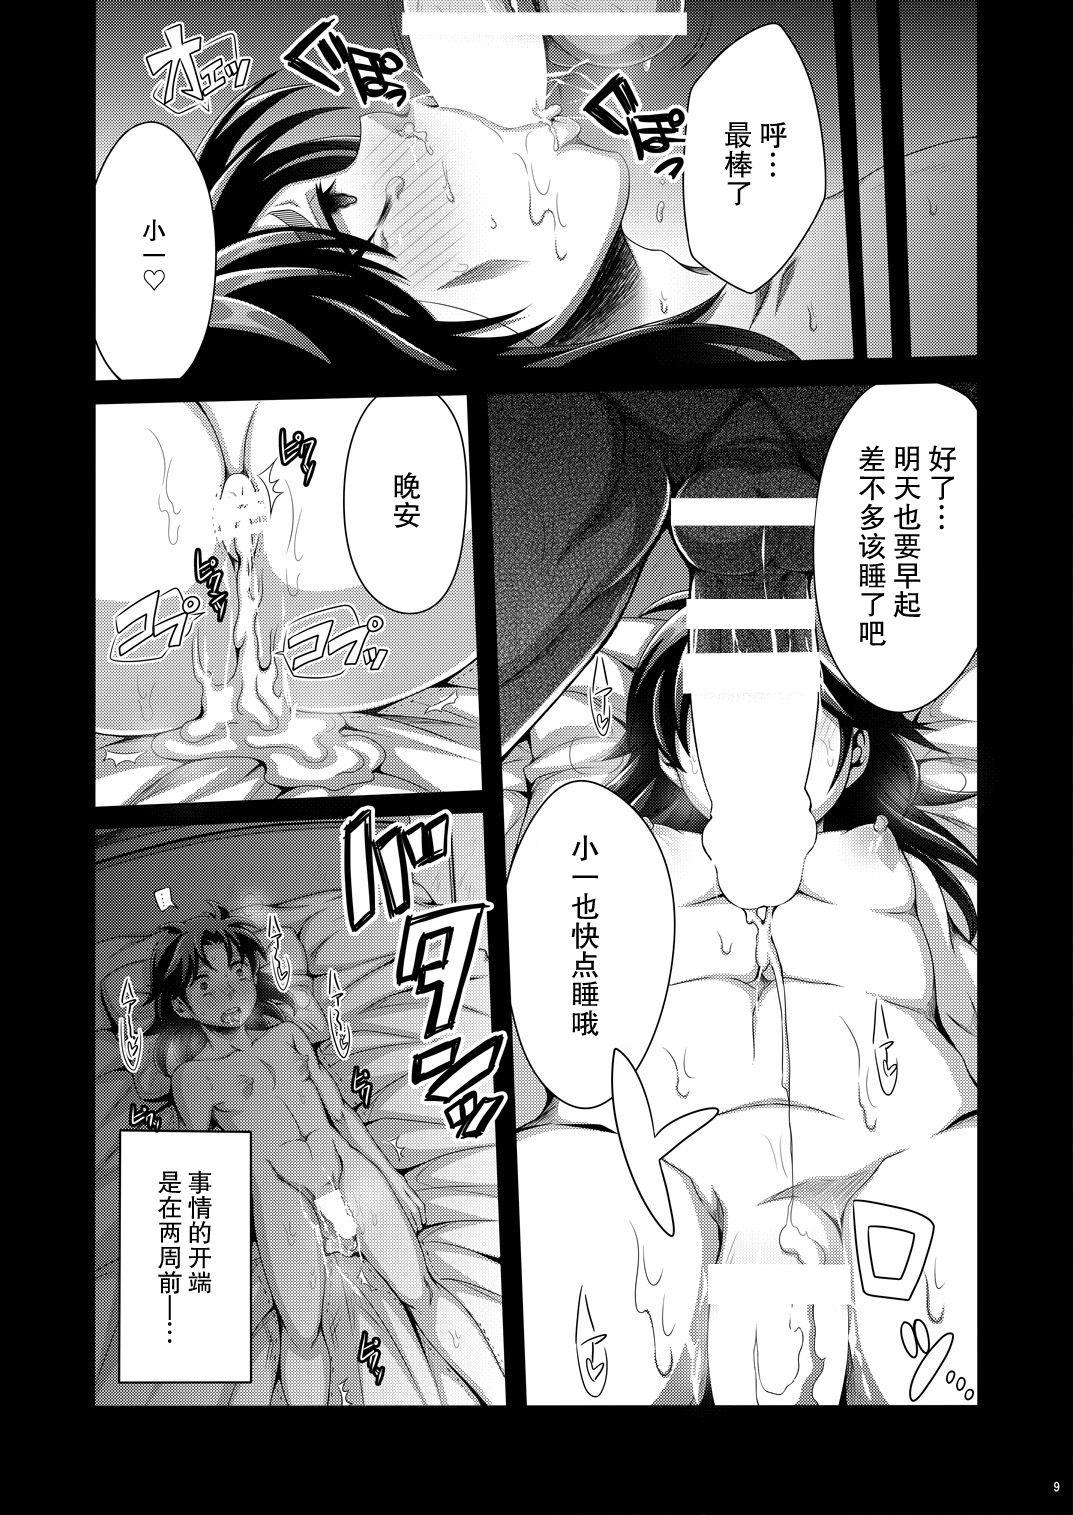 Alone Manatsu no Heikousen - Kindaichi shounen no jikenbo Submissive - Page 8